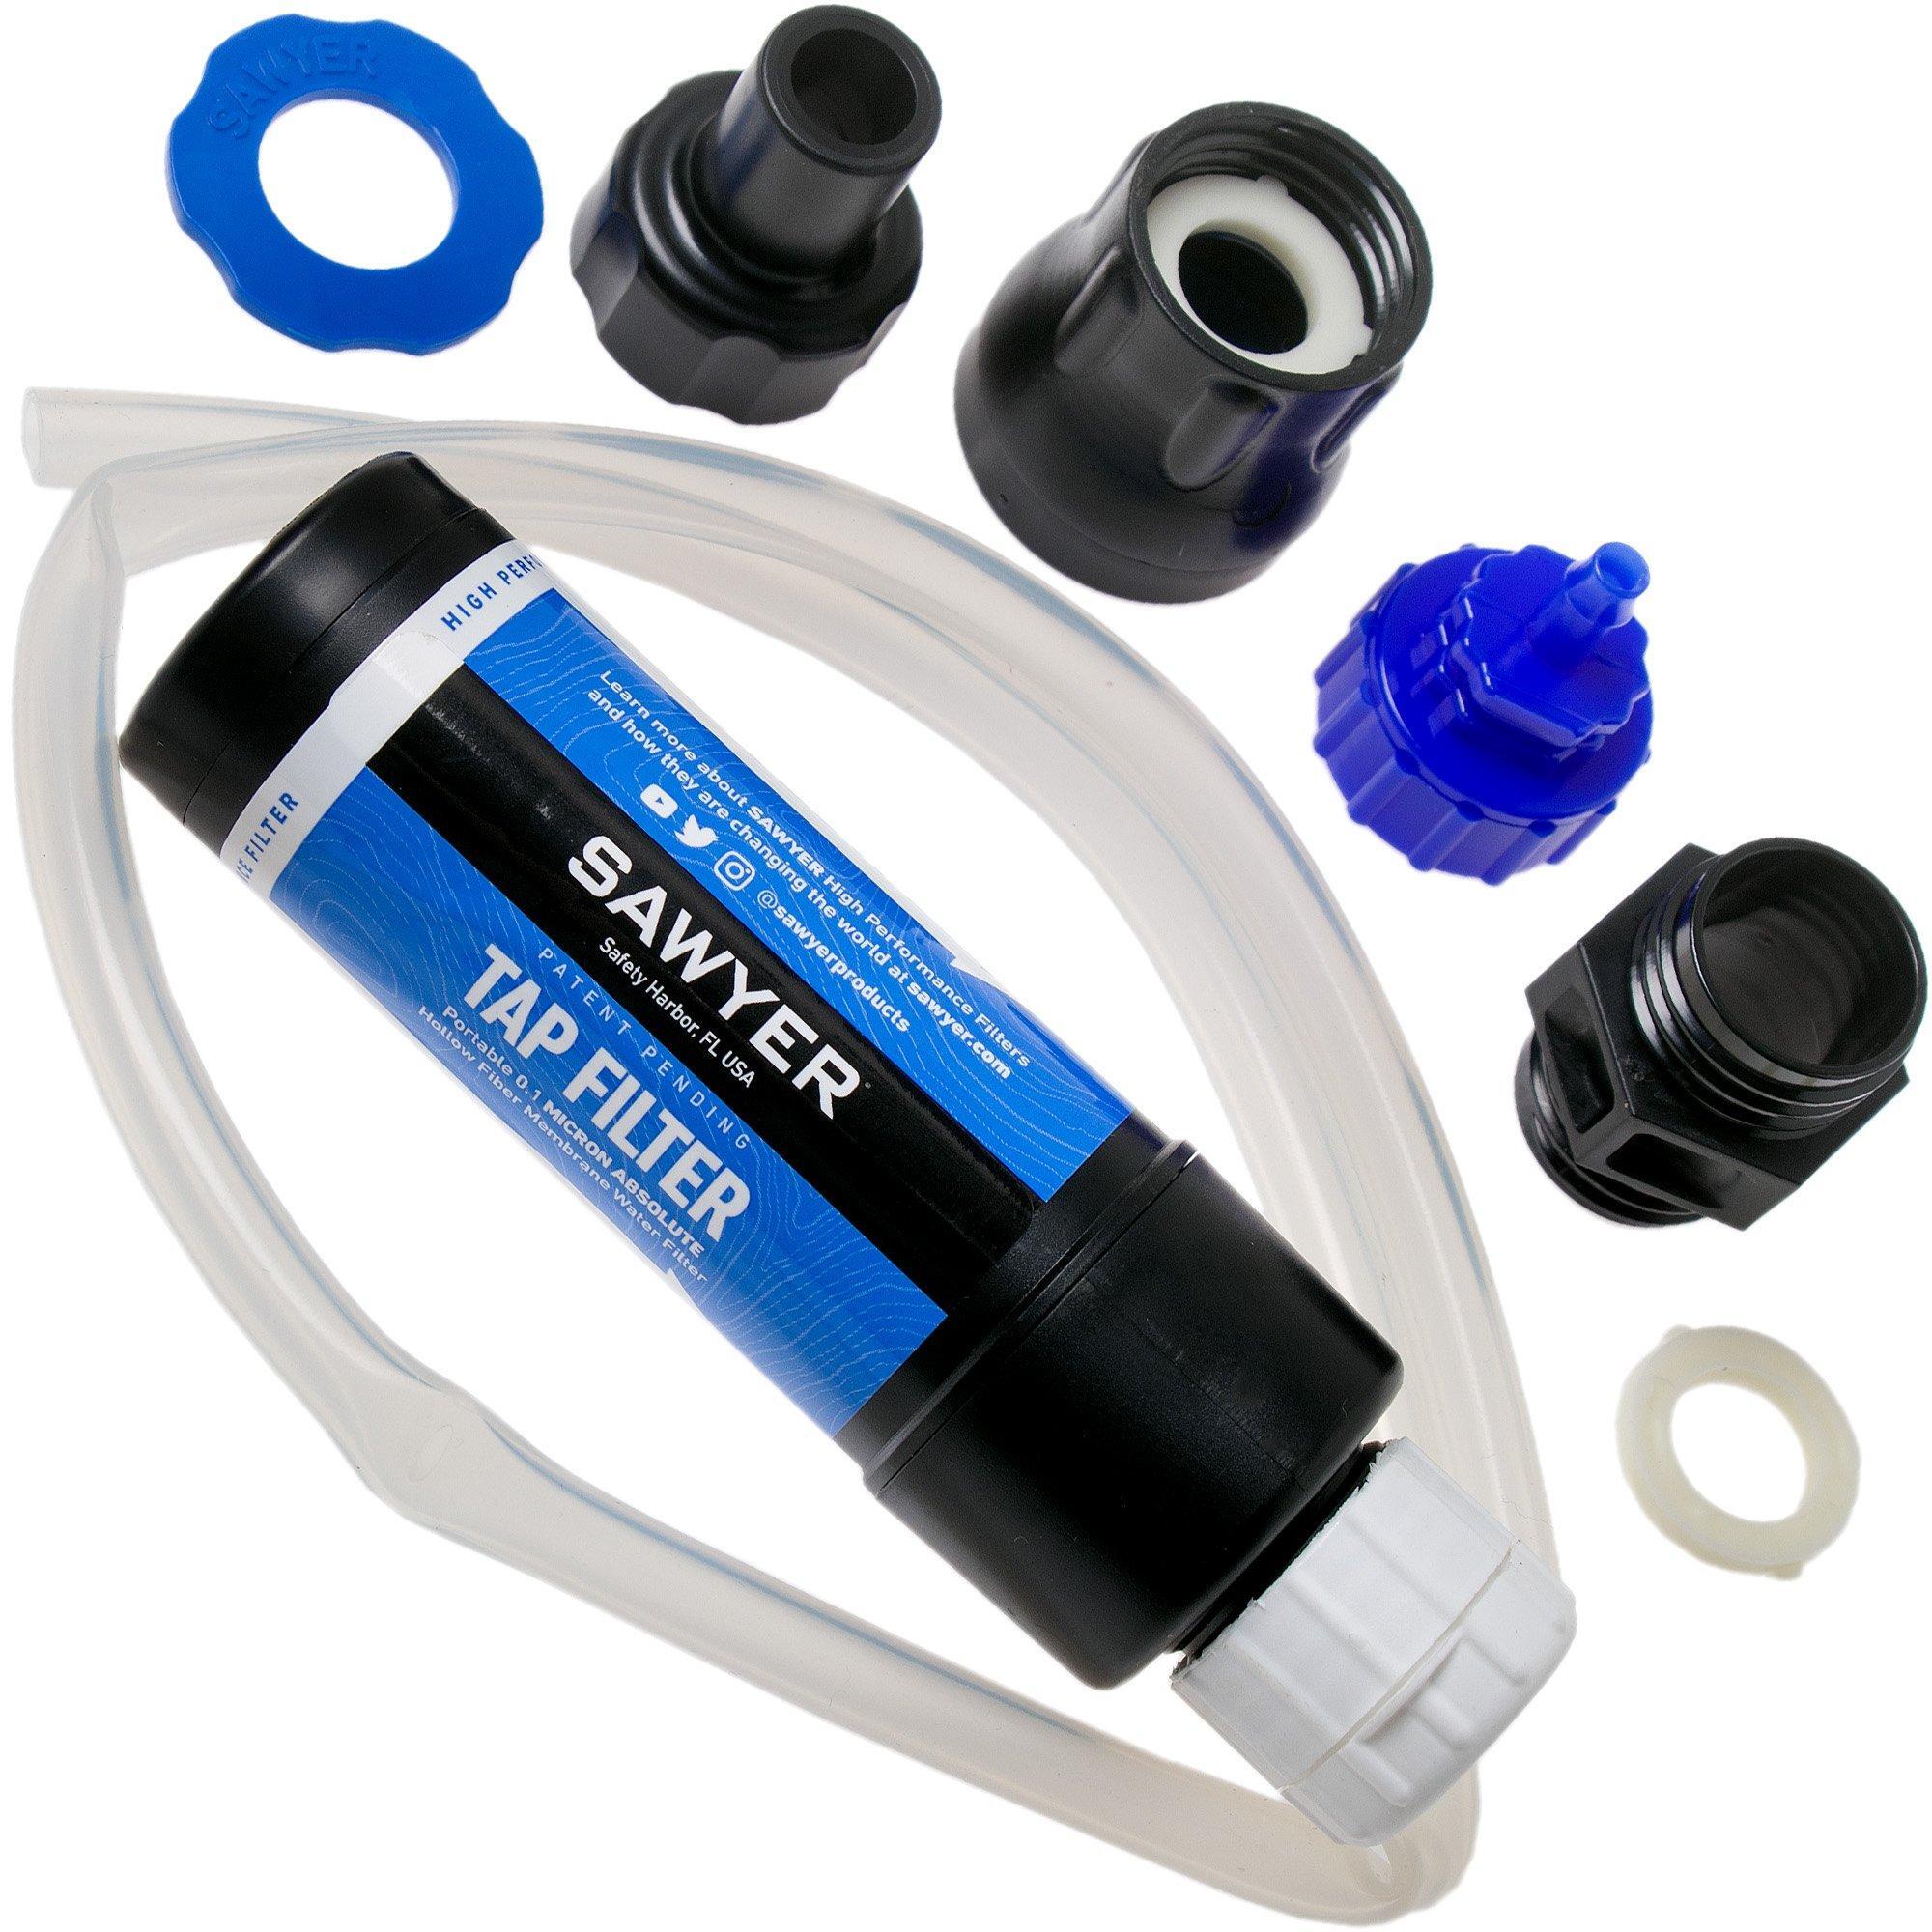 Sawyer Sawyer Tap Filter SP134, waterfilter voor aan een kraan